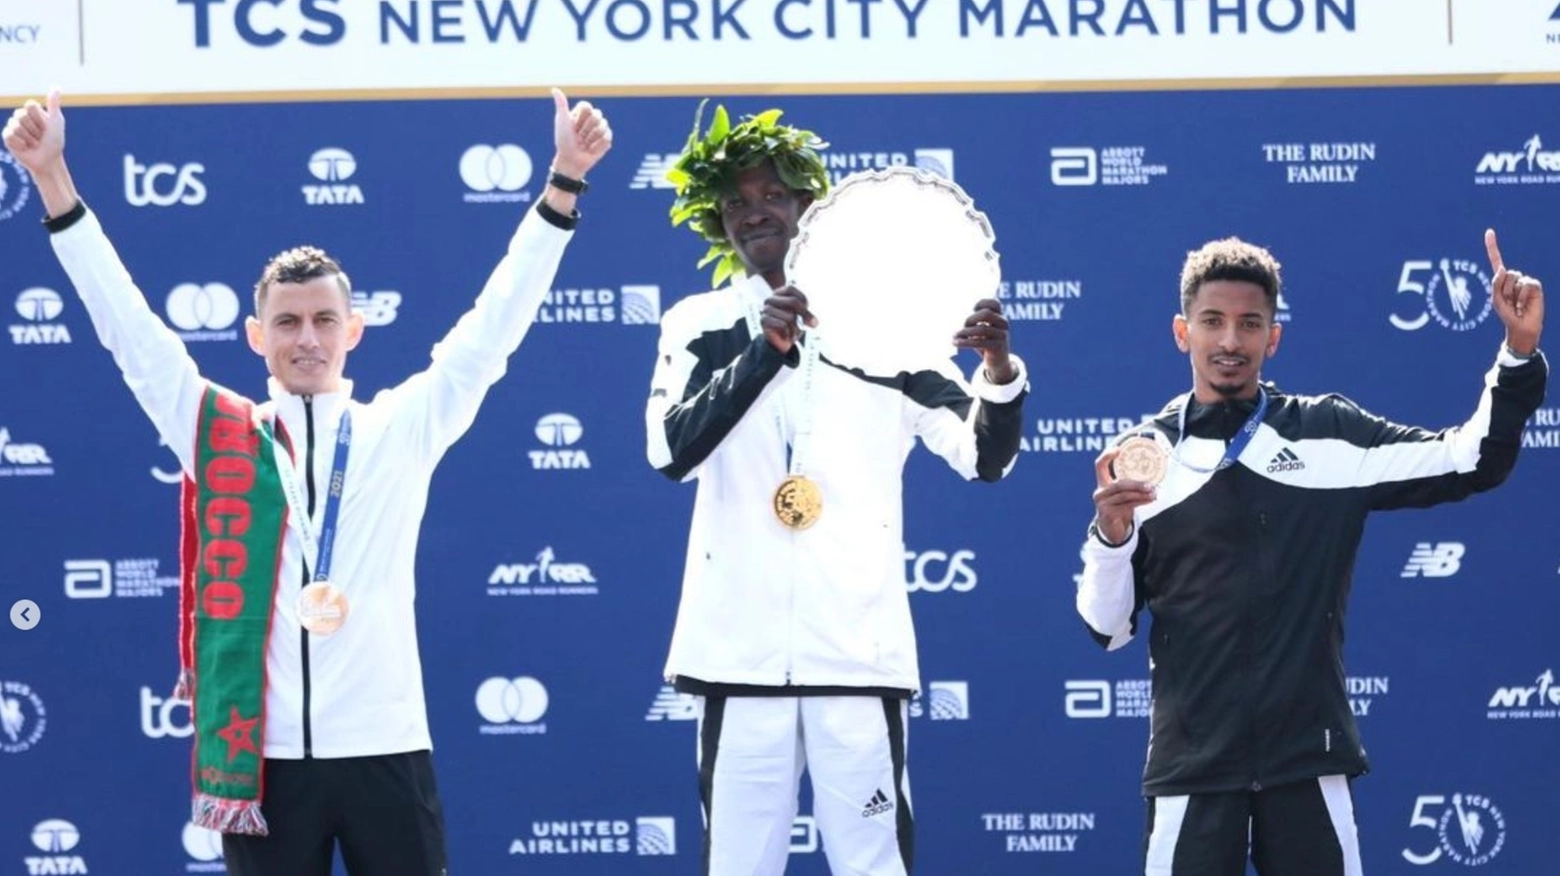 Il podio della maratona di New York (foto Fidal)